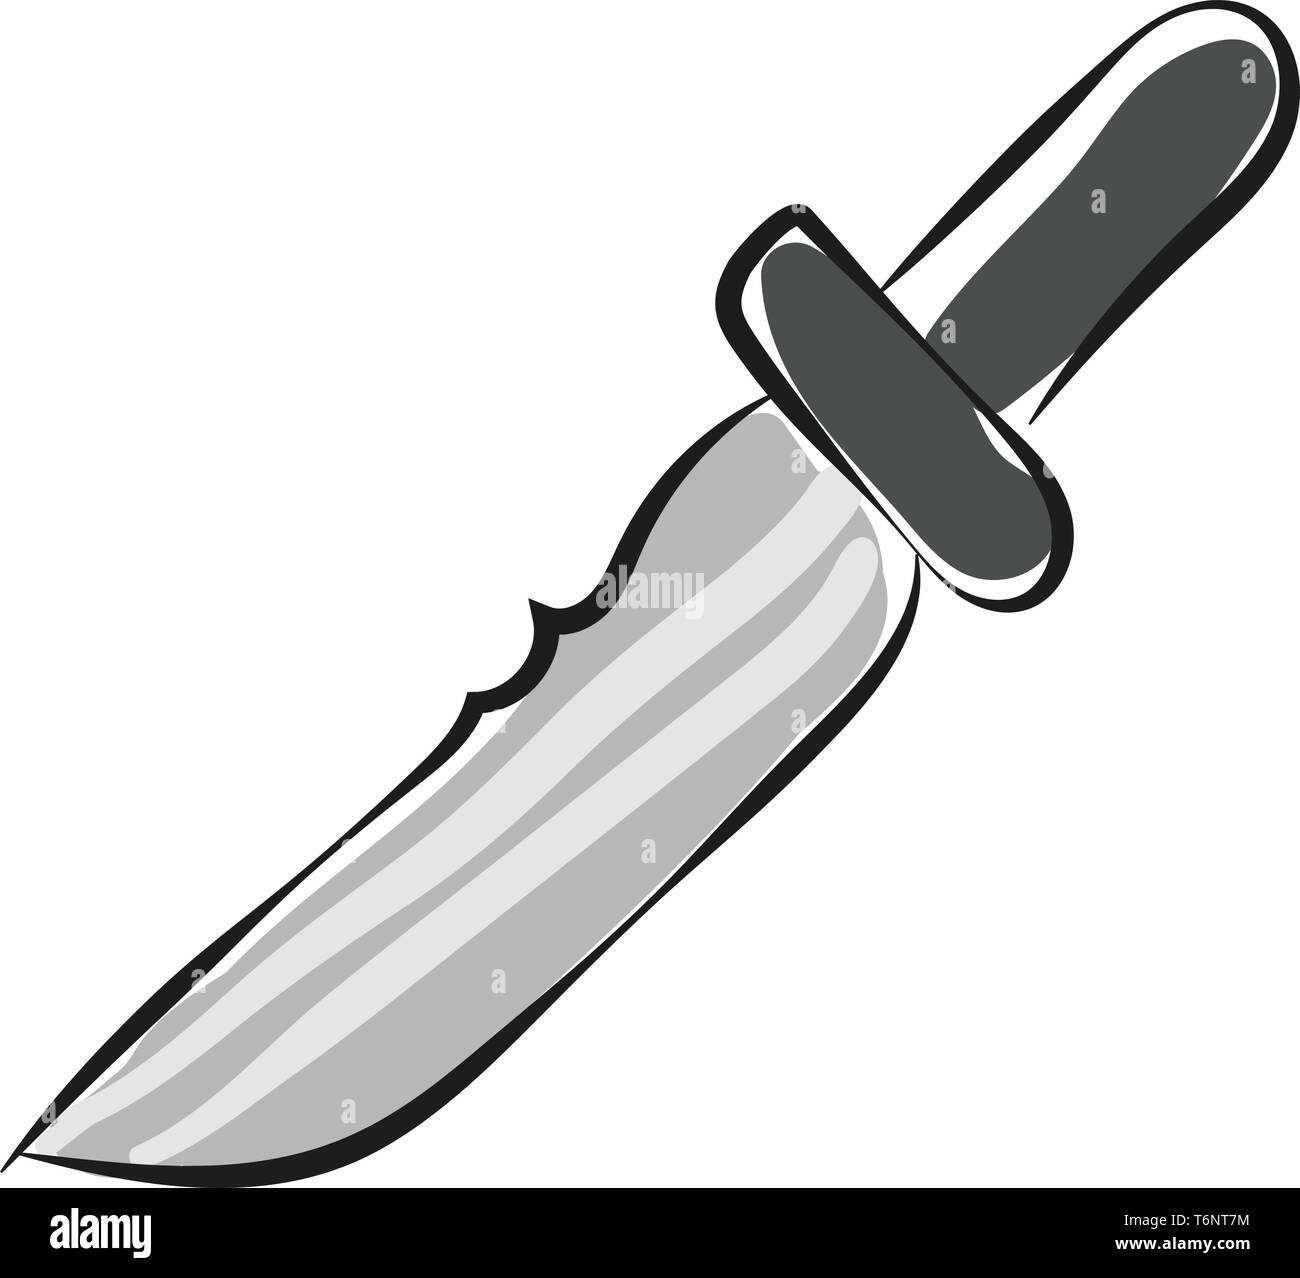 Disegno del coltello di un attrezzo costituito da una sega acuta-come argento paletta fissata in un manico nero utilizzato per il taglio o come un vettore di arma colo Illustrazione Vettoriale